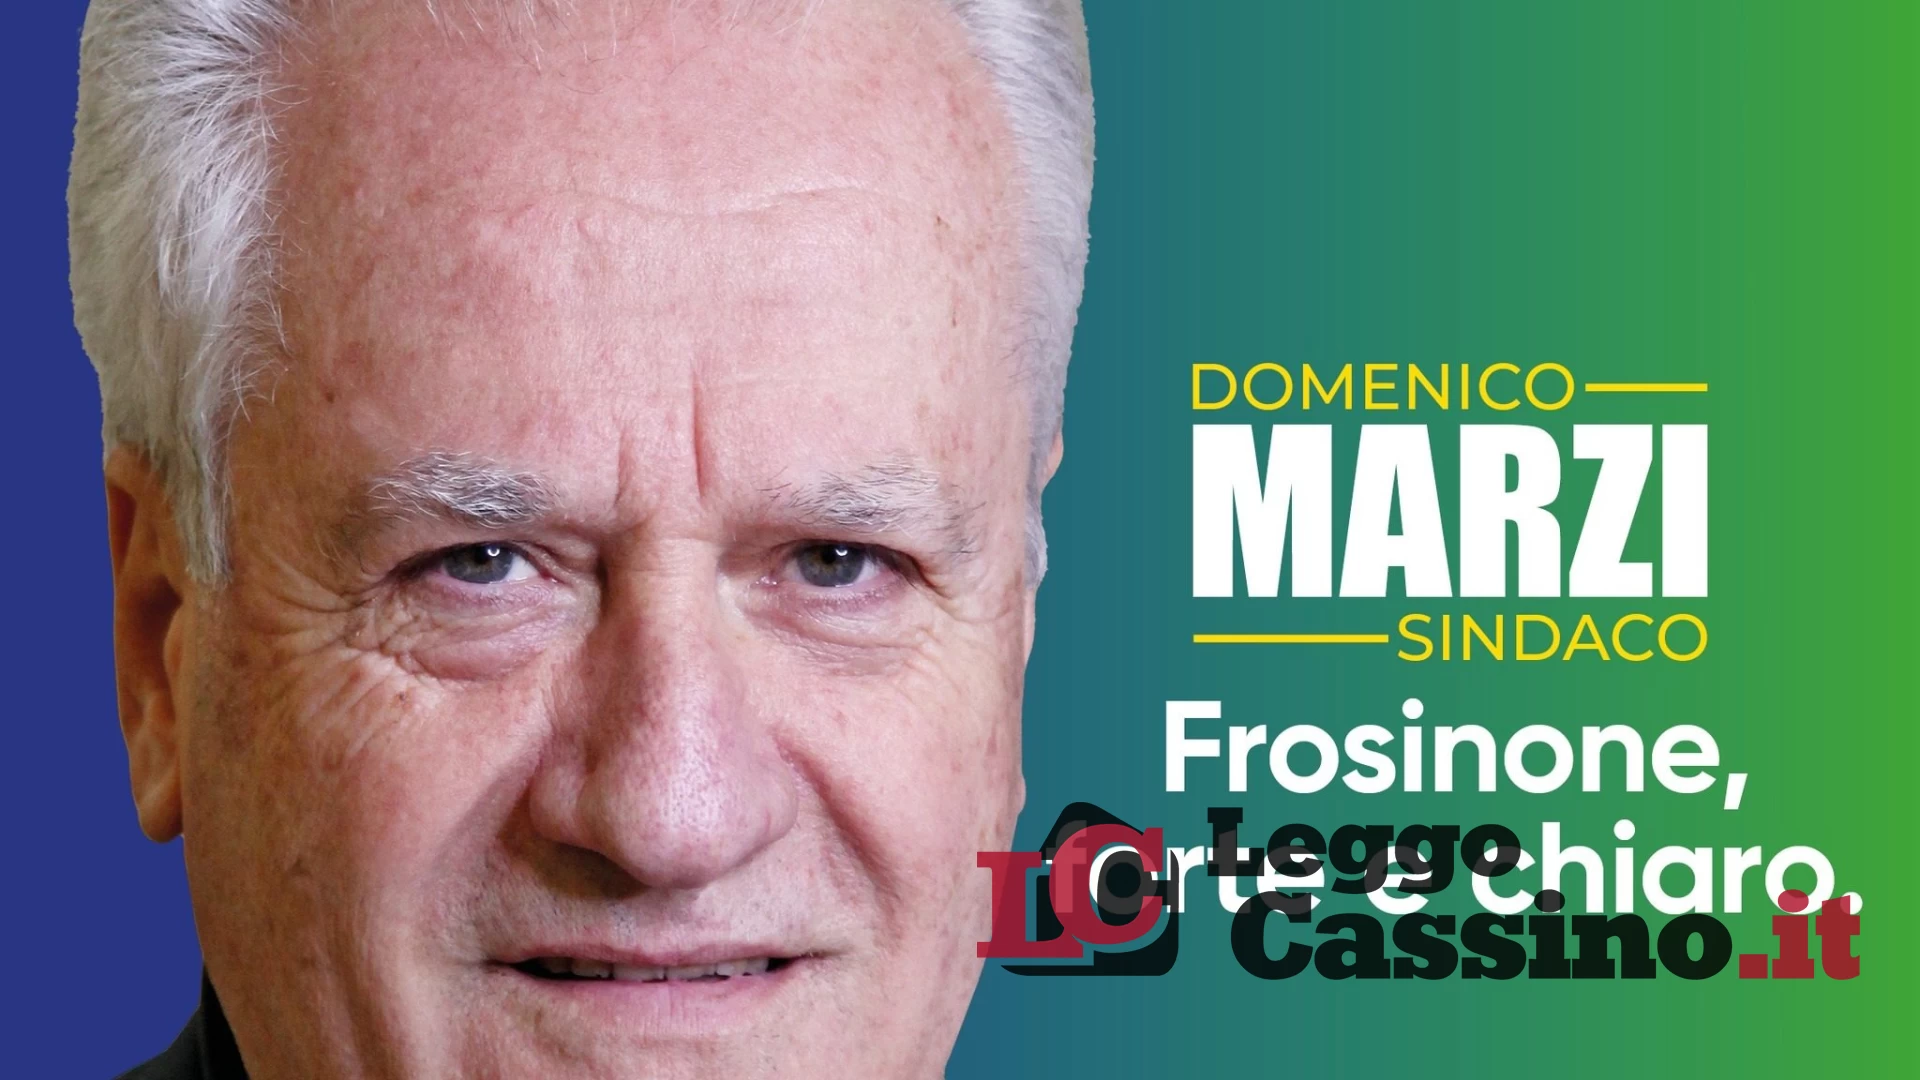 Comunali Frosinone, stop alle divisioni:  Marini a sostegno di Marzi